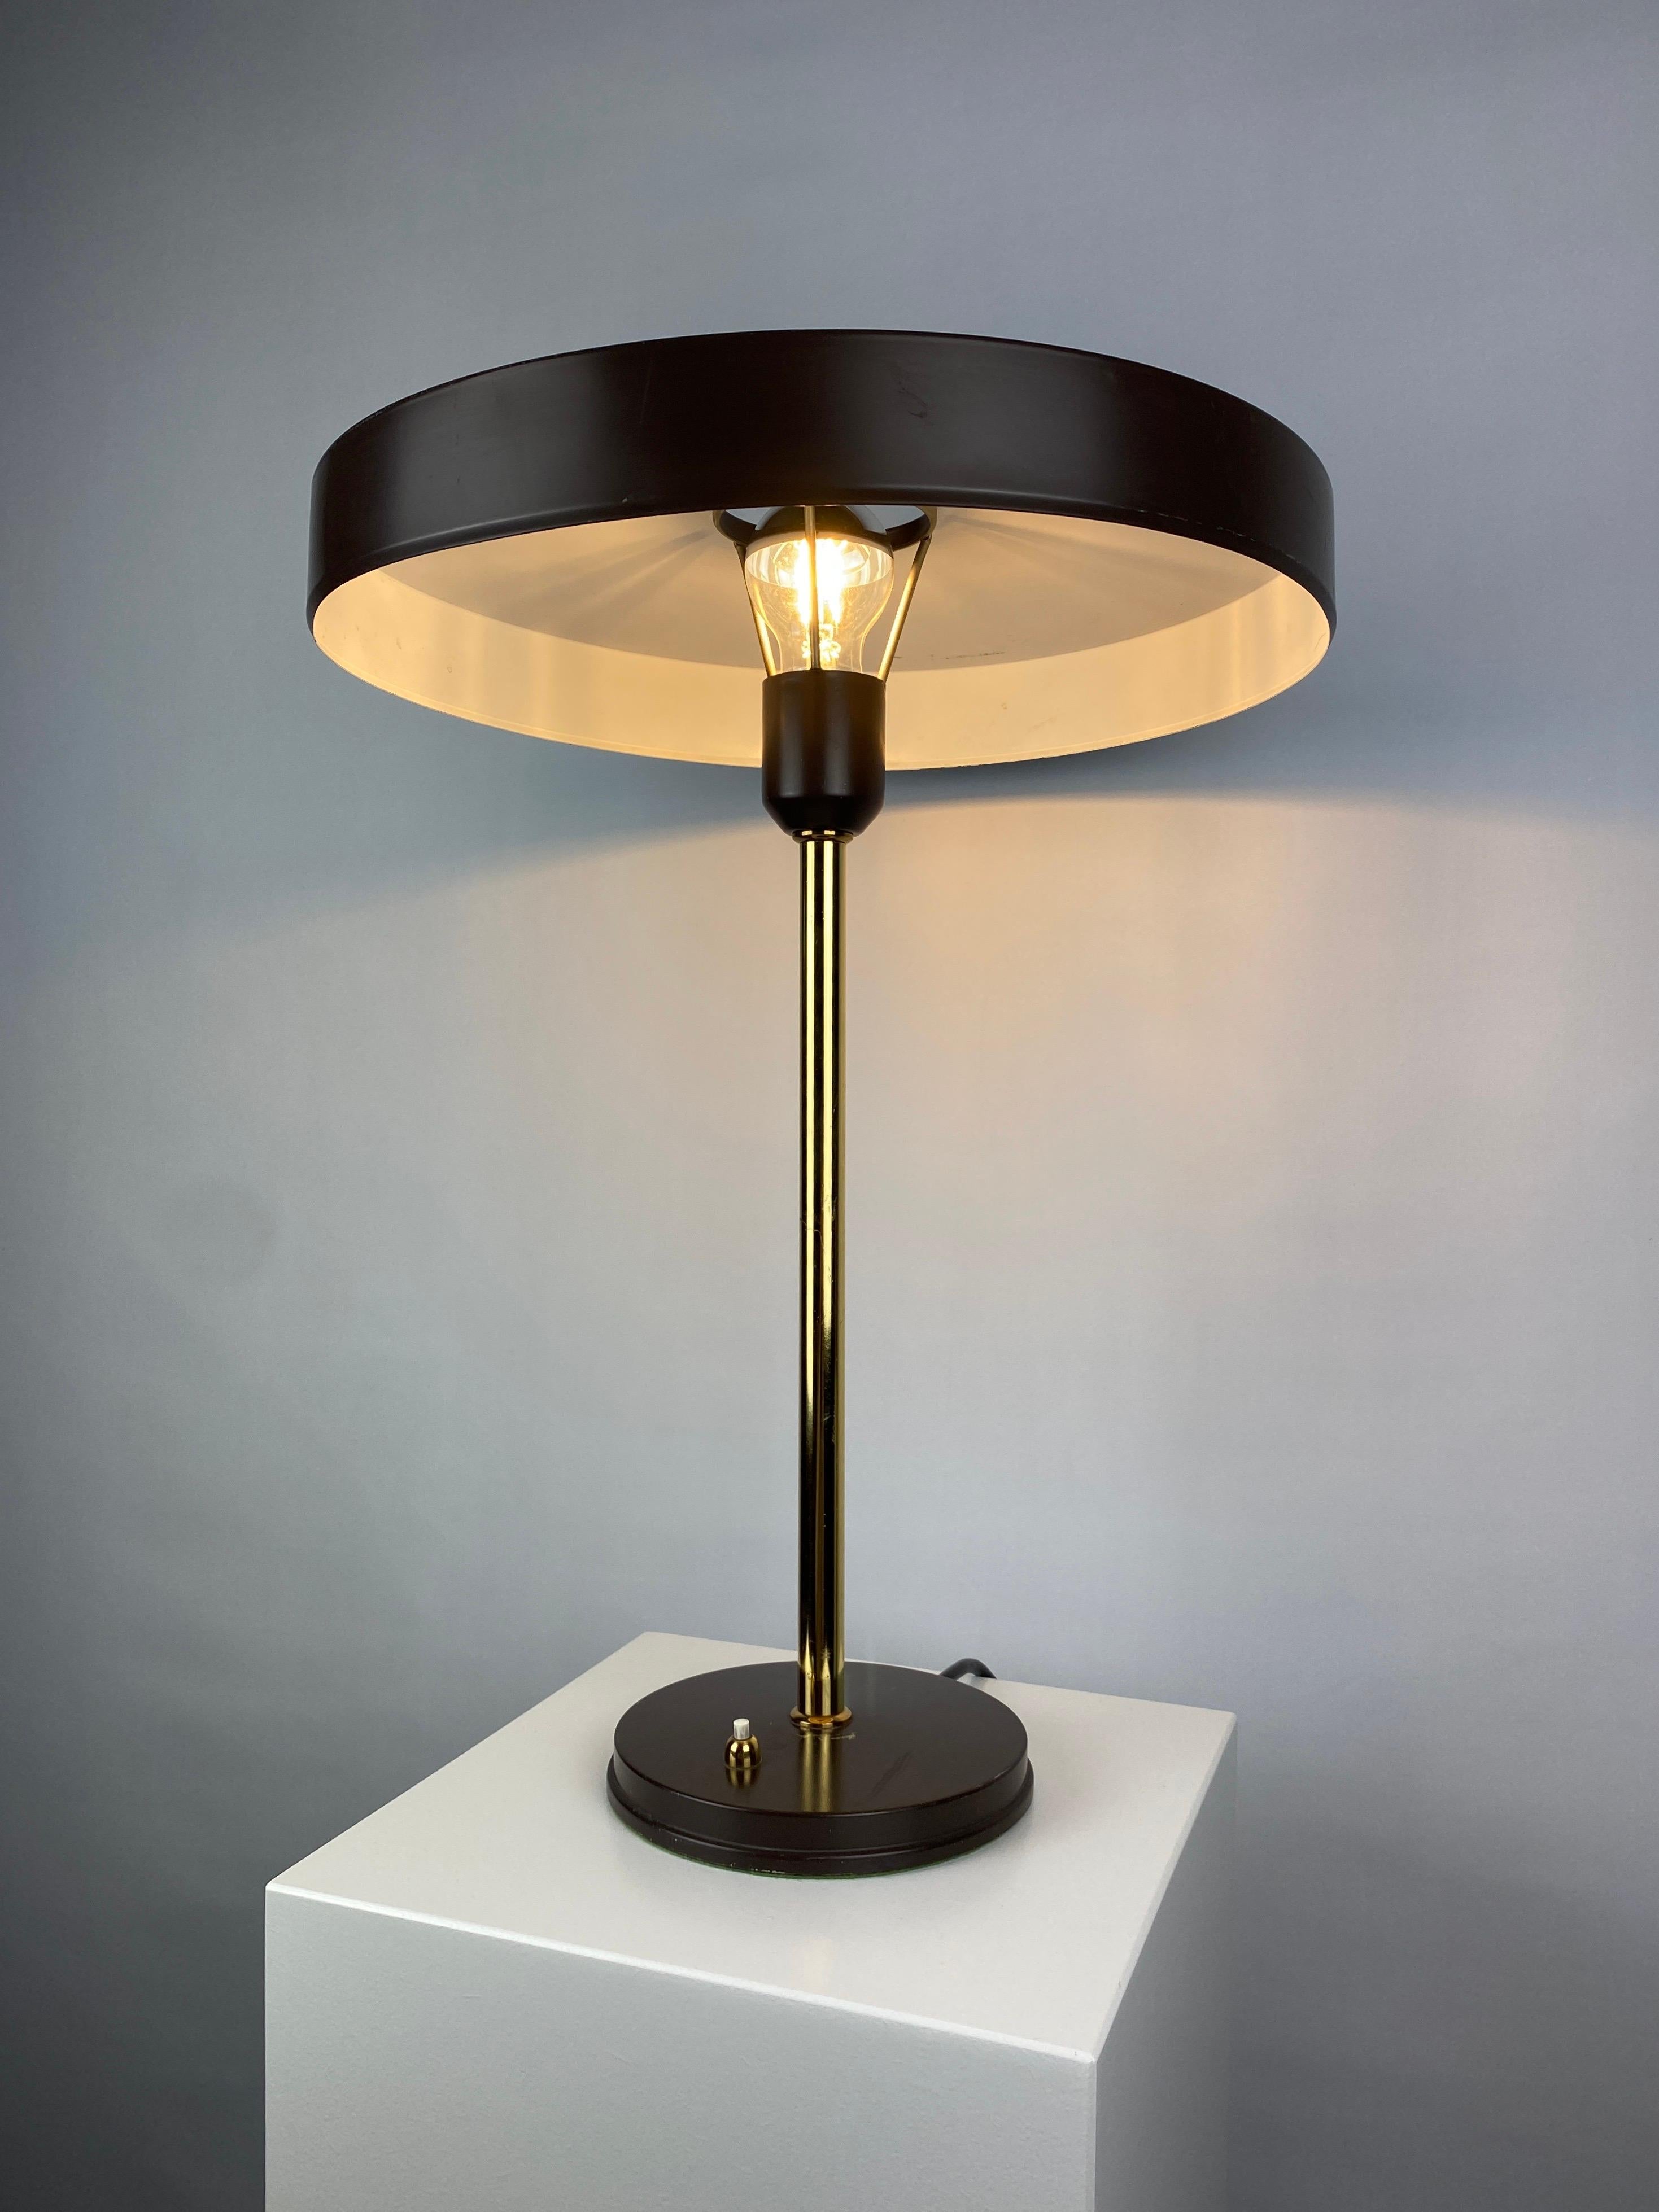 Un superbe design de Louis Kalff pour Philips, intitulé Timor 69 Desk Lamp. Il a été fabriqué entre 1970 et 1980. Cette version est en marron et or, et possède un abat-jour en forme d'ovni avec un trou au milieu pour une lampe à miroir en